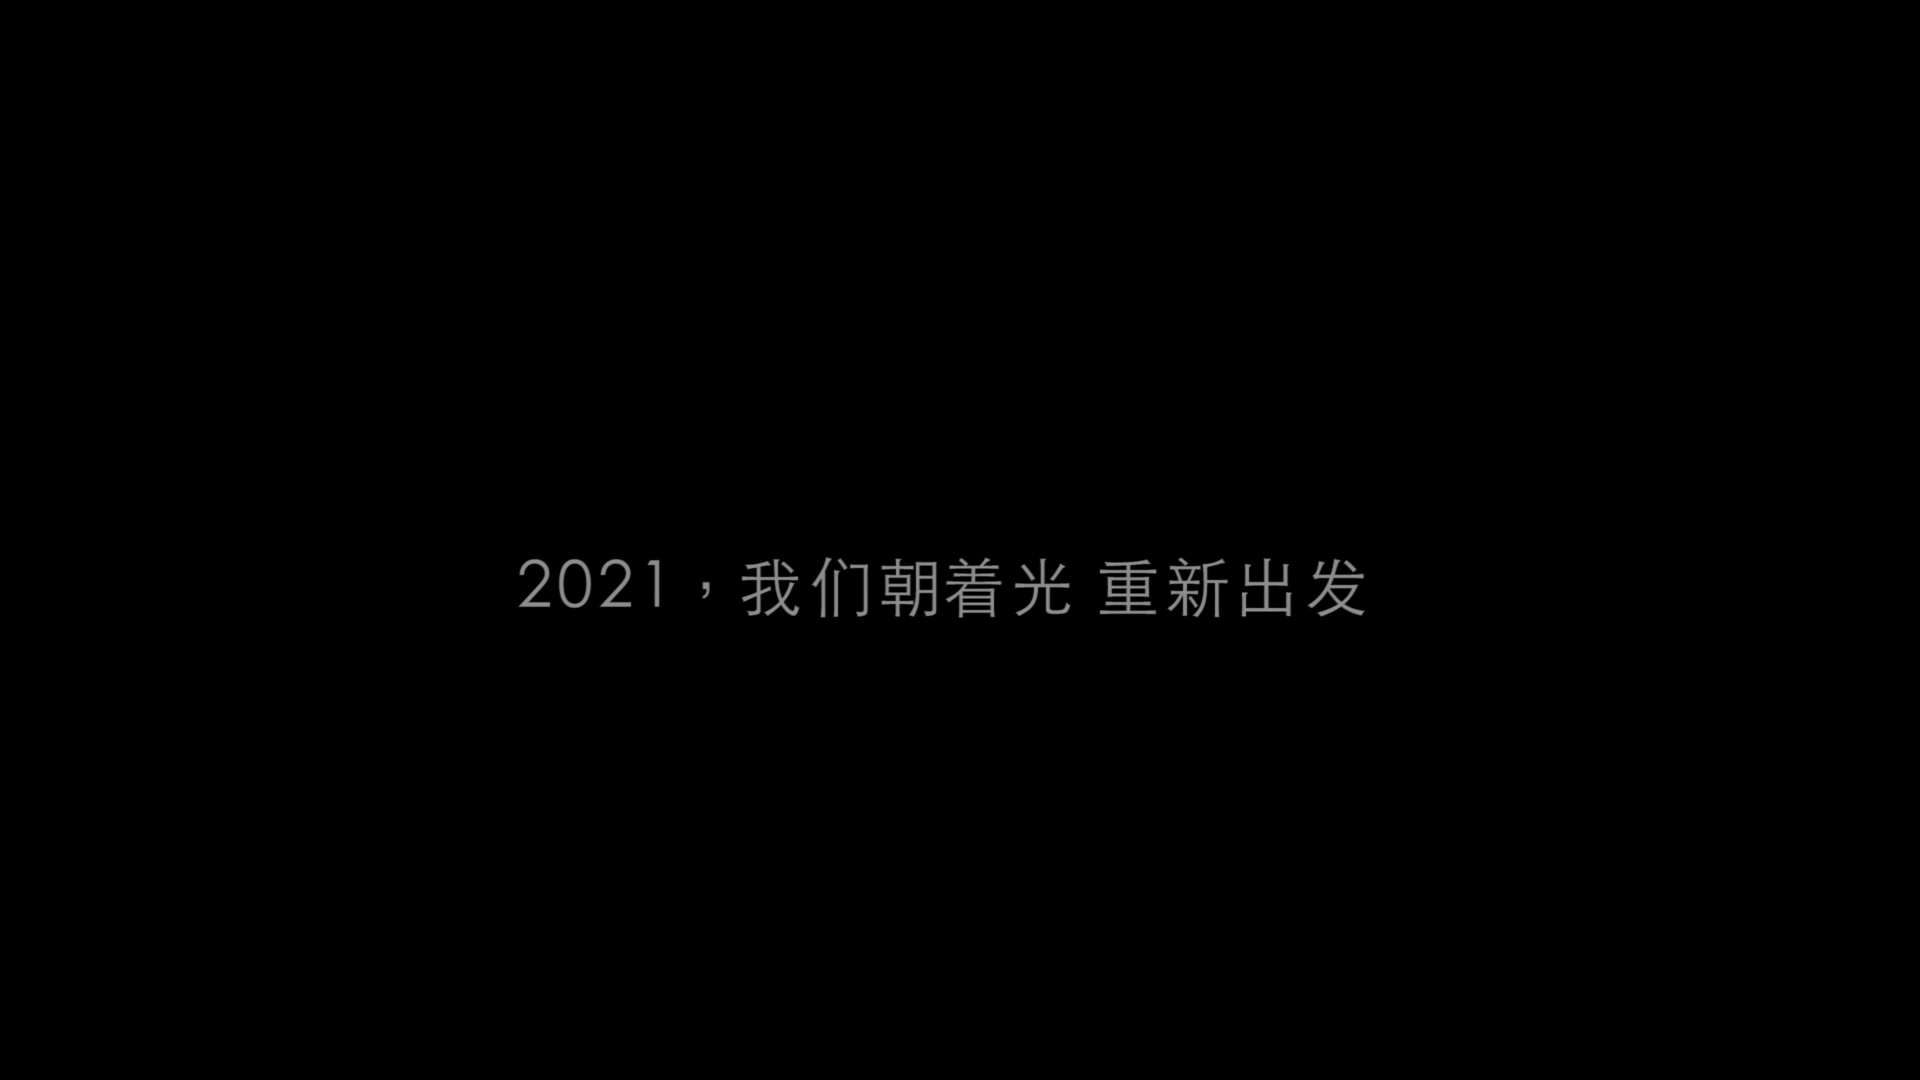 江苏卫视 - 2021跨年演唱会  我们朝着光，新出发